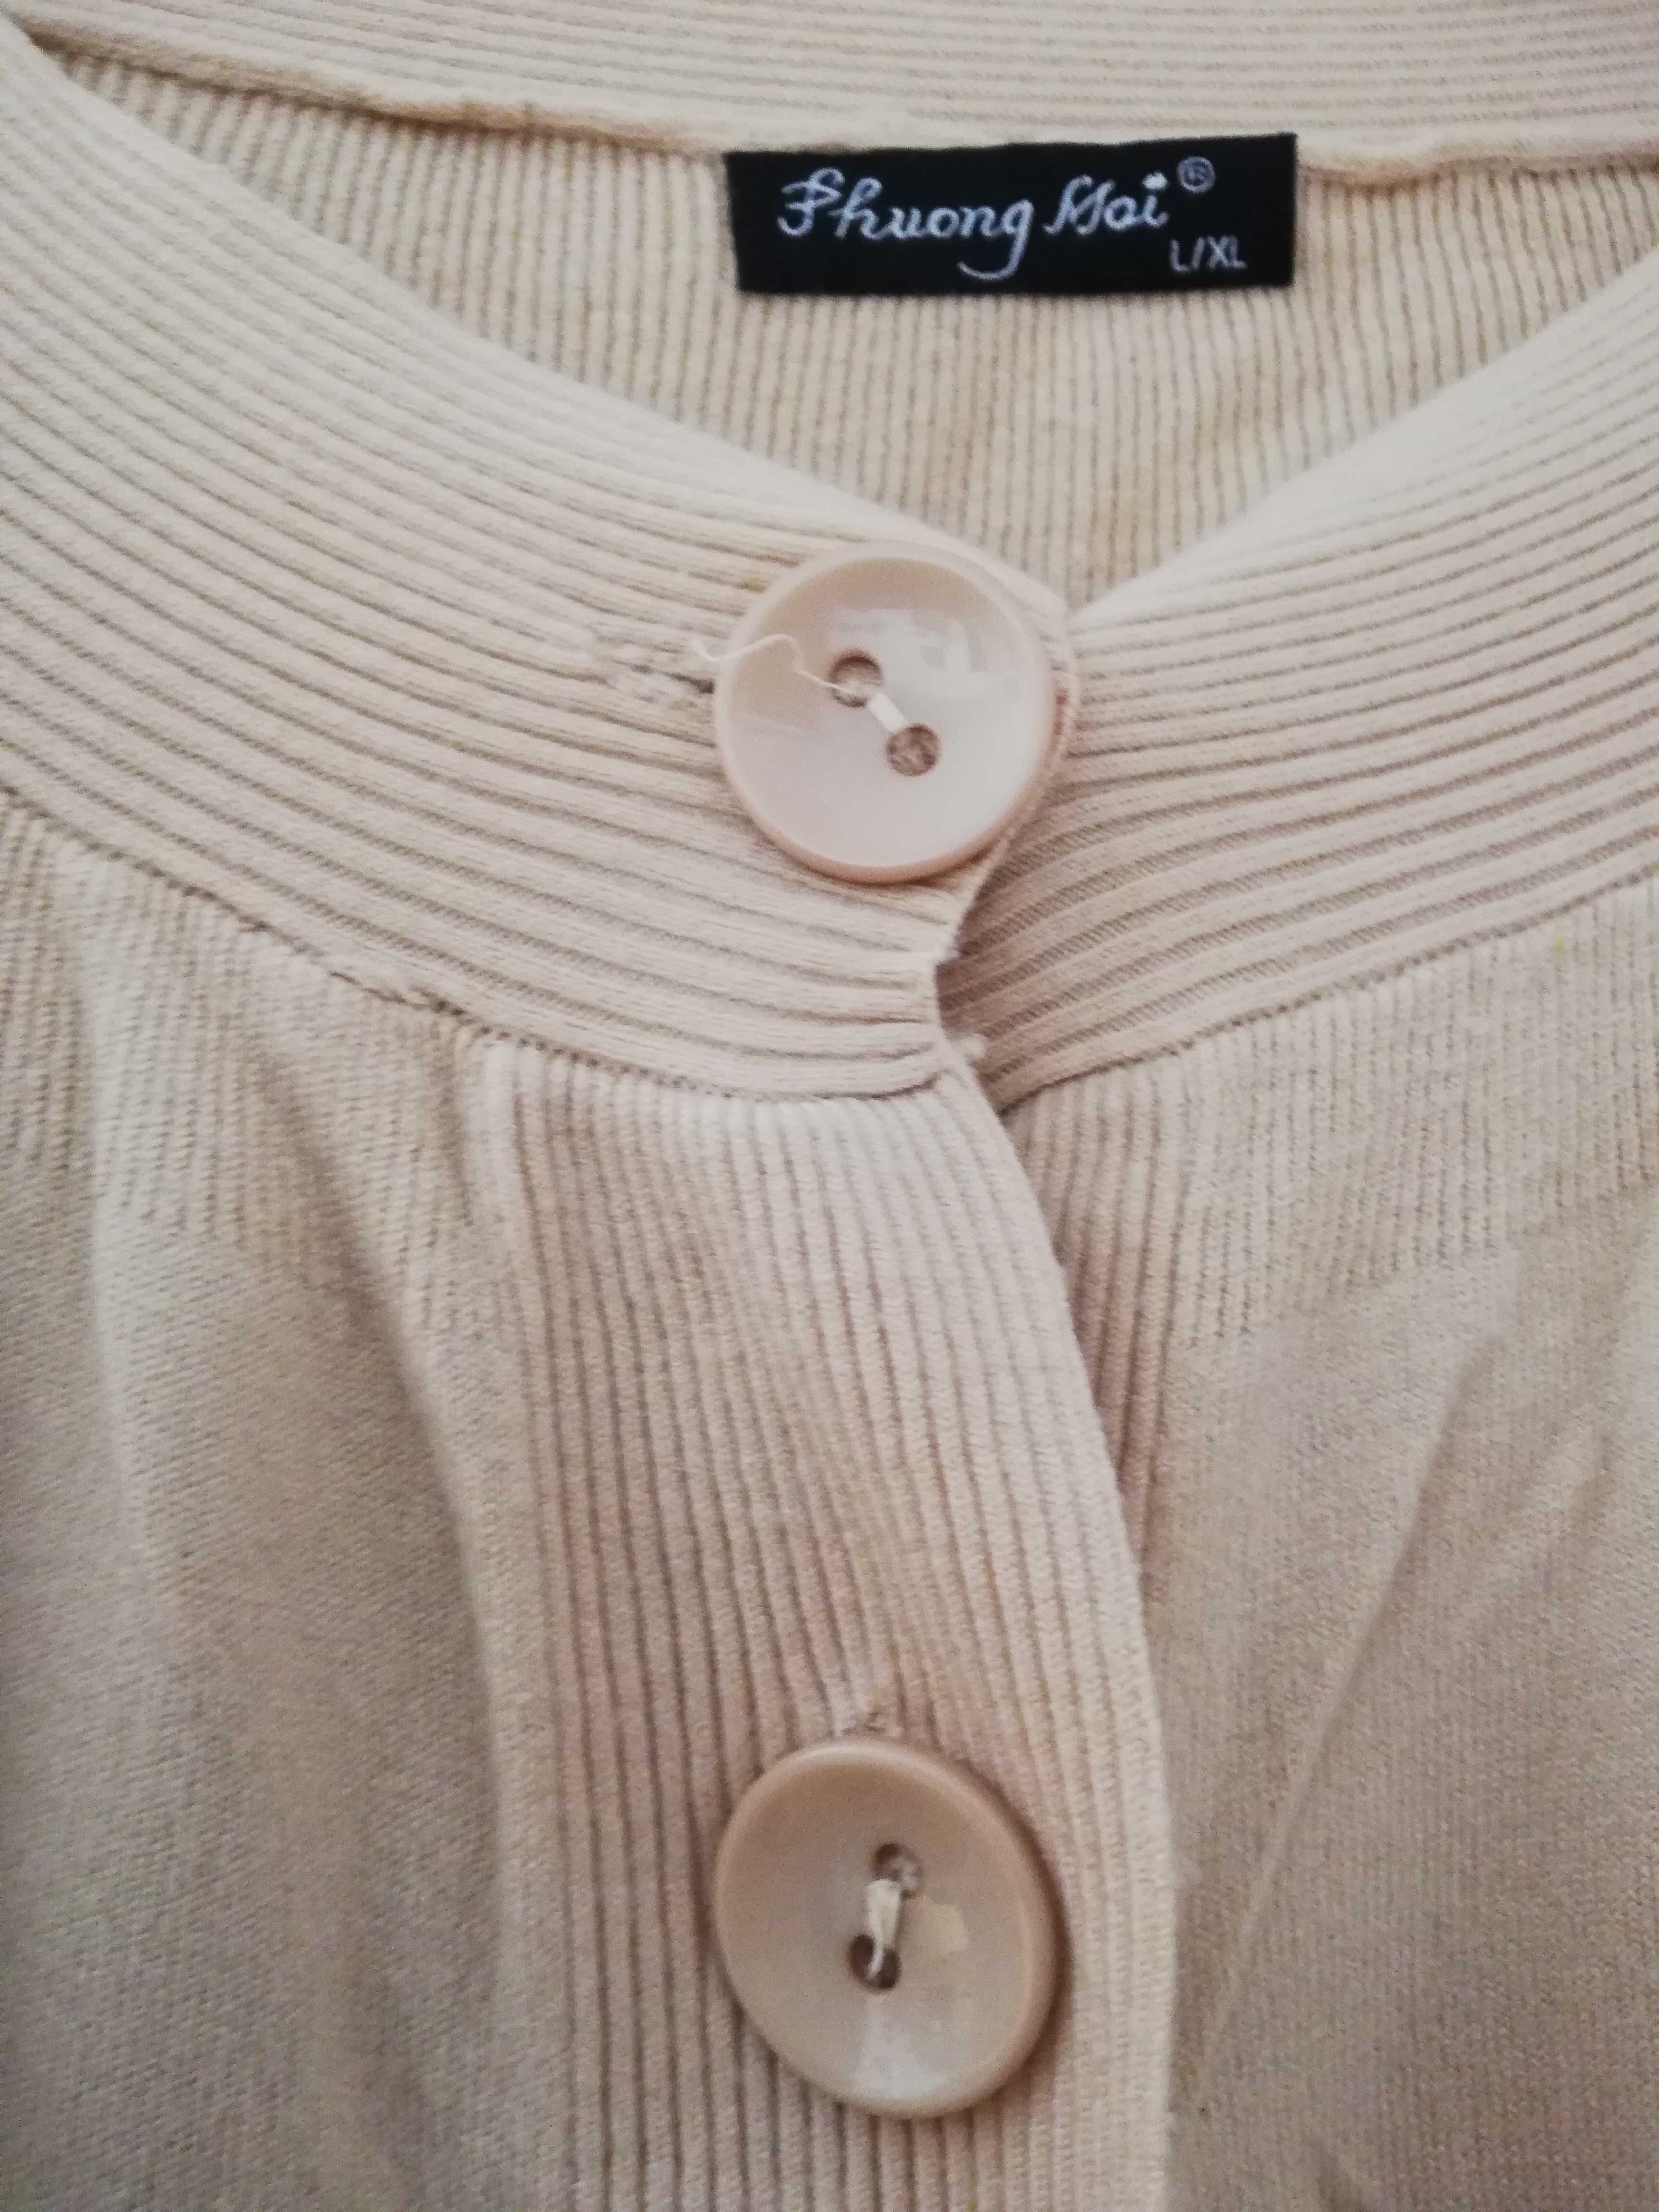 oryginalny sweterek zapinany na 2 guziki 36-38